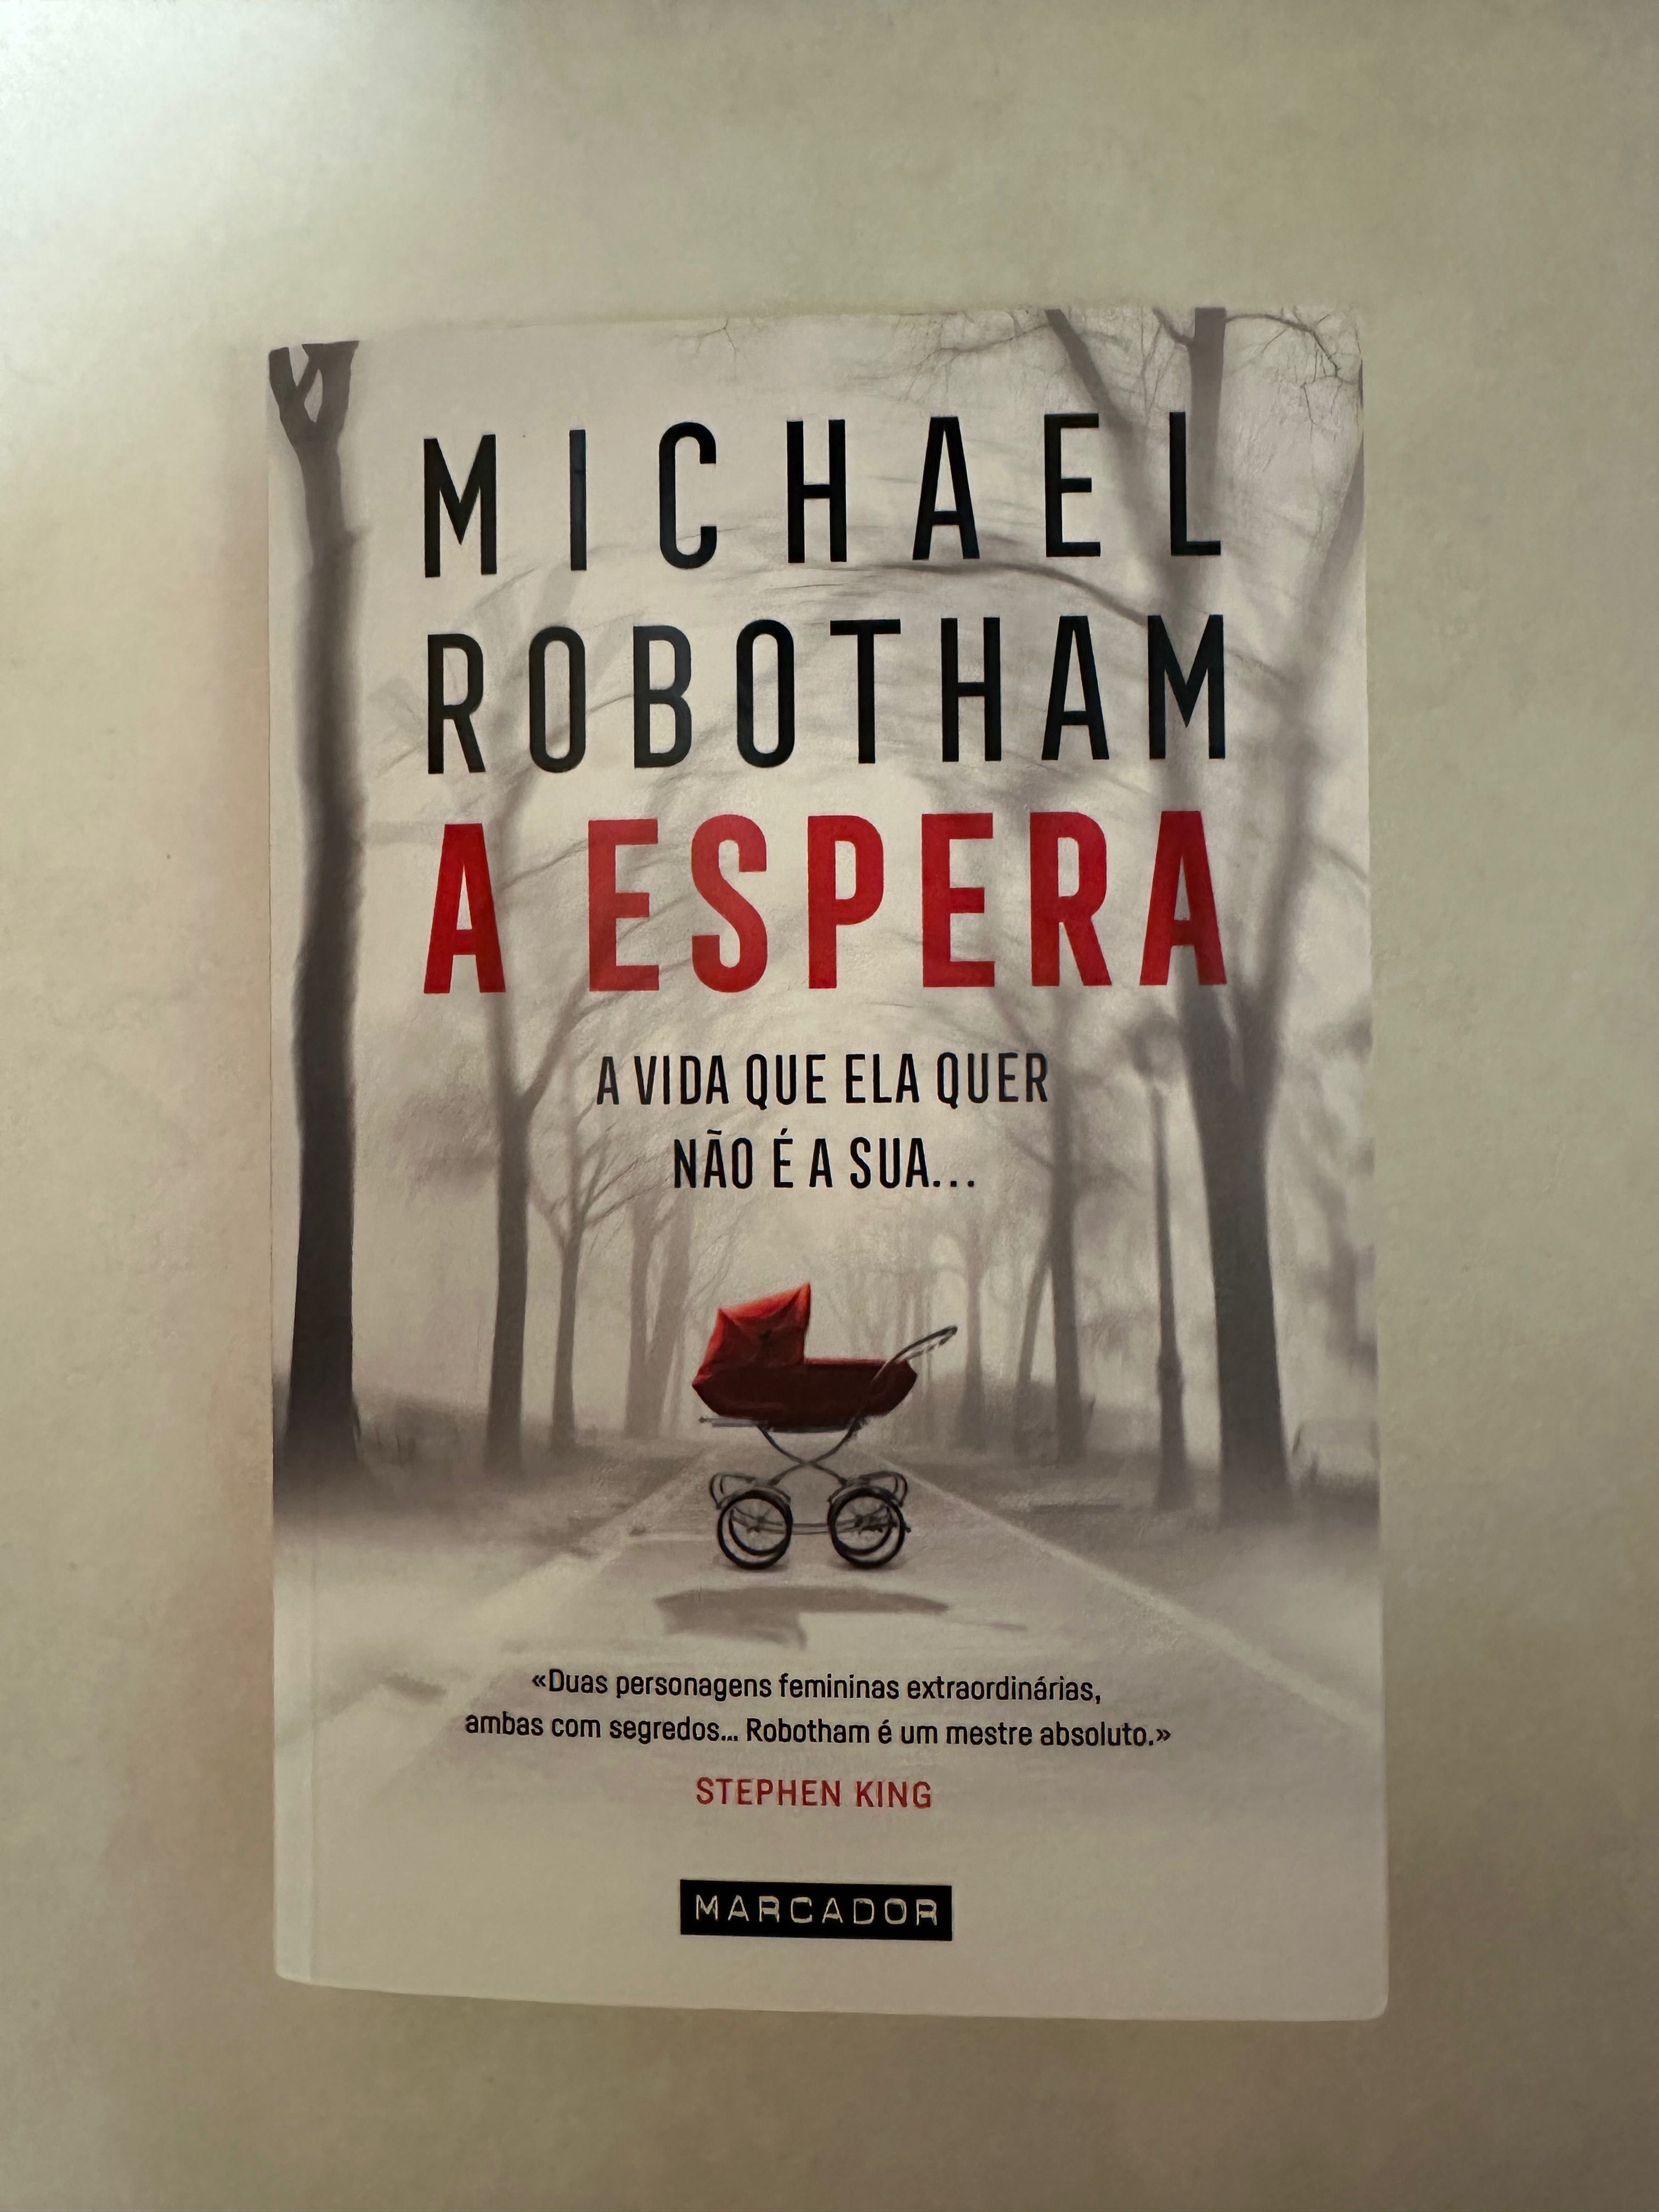 Livro “A Espera” de Michael Robotham